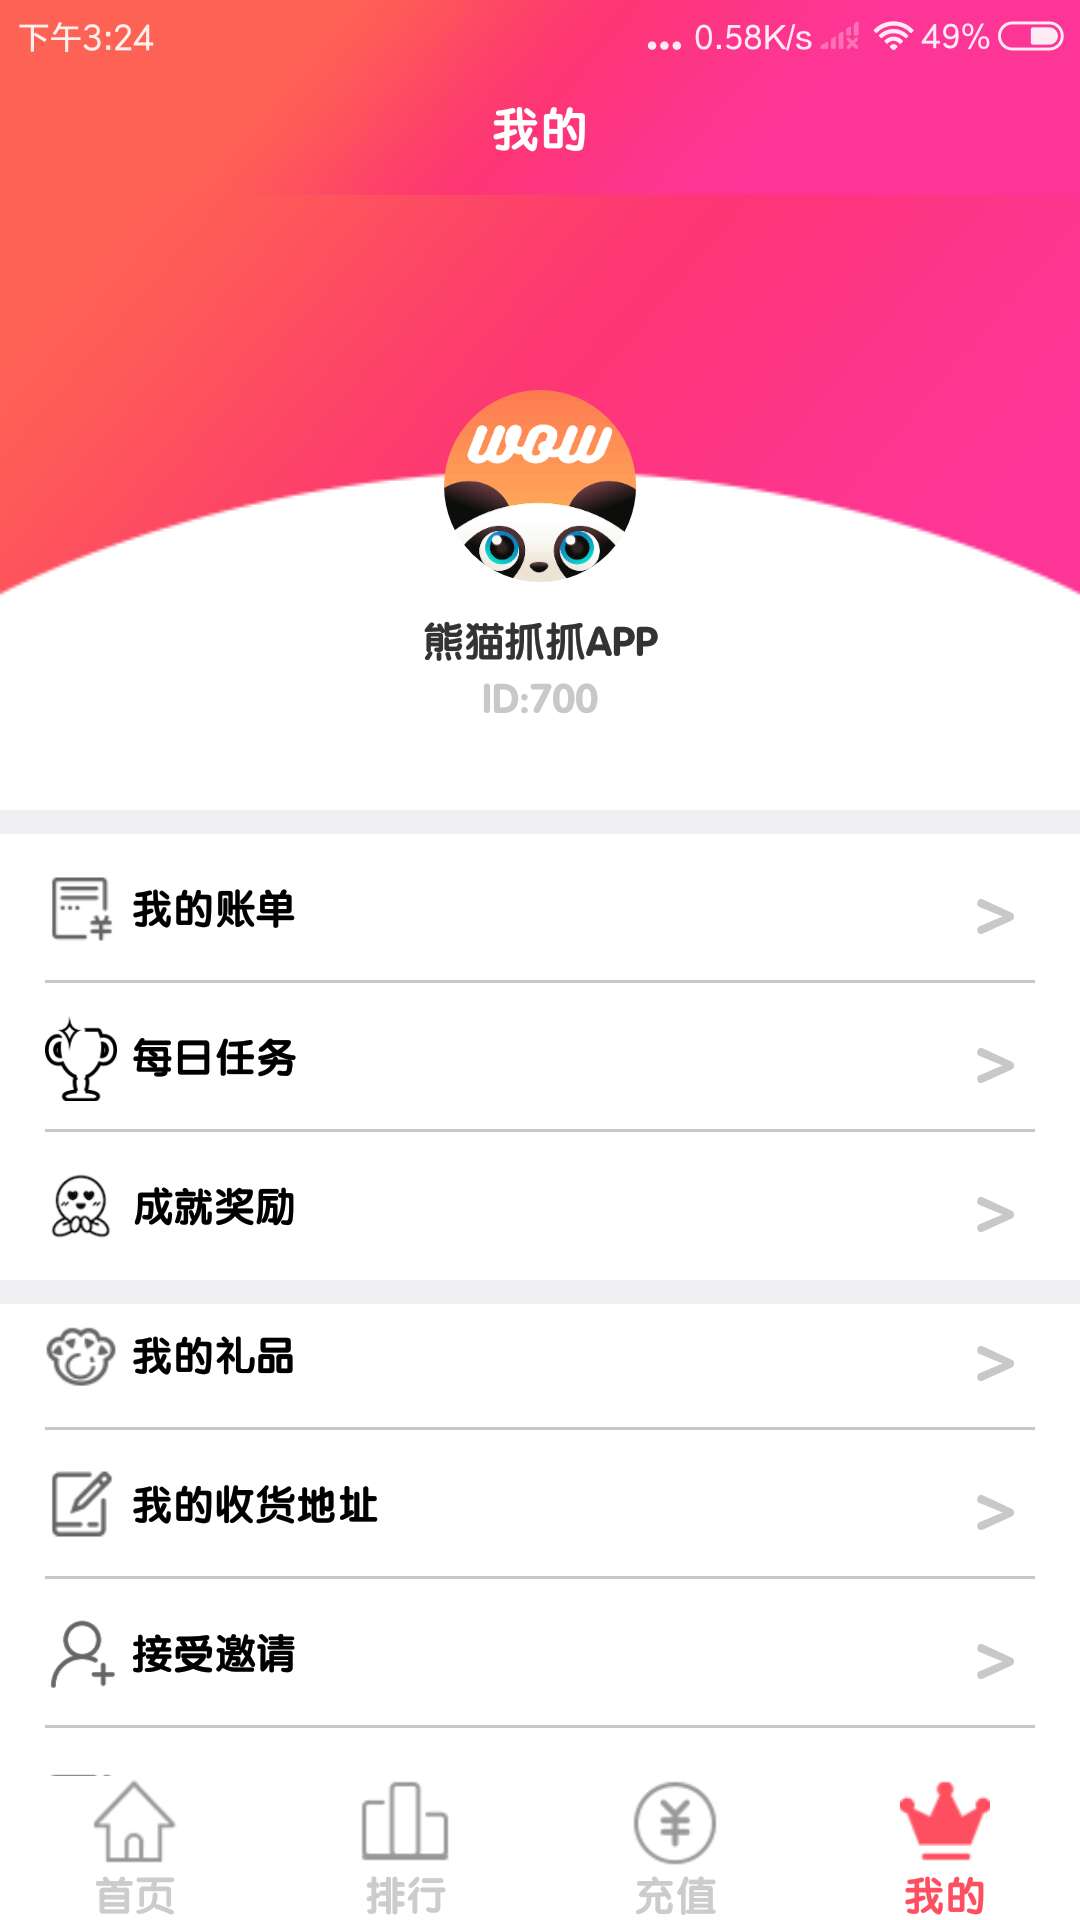 熊猫抓抓app v3.0.0 最新版